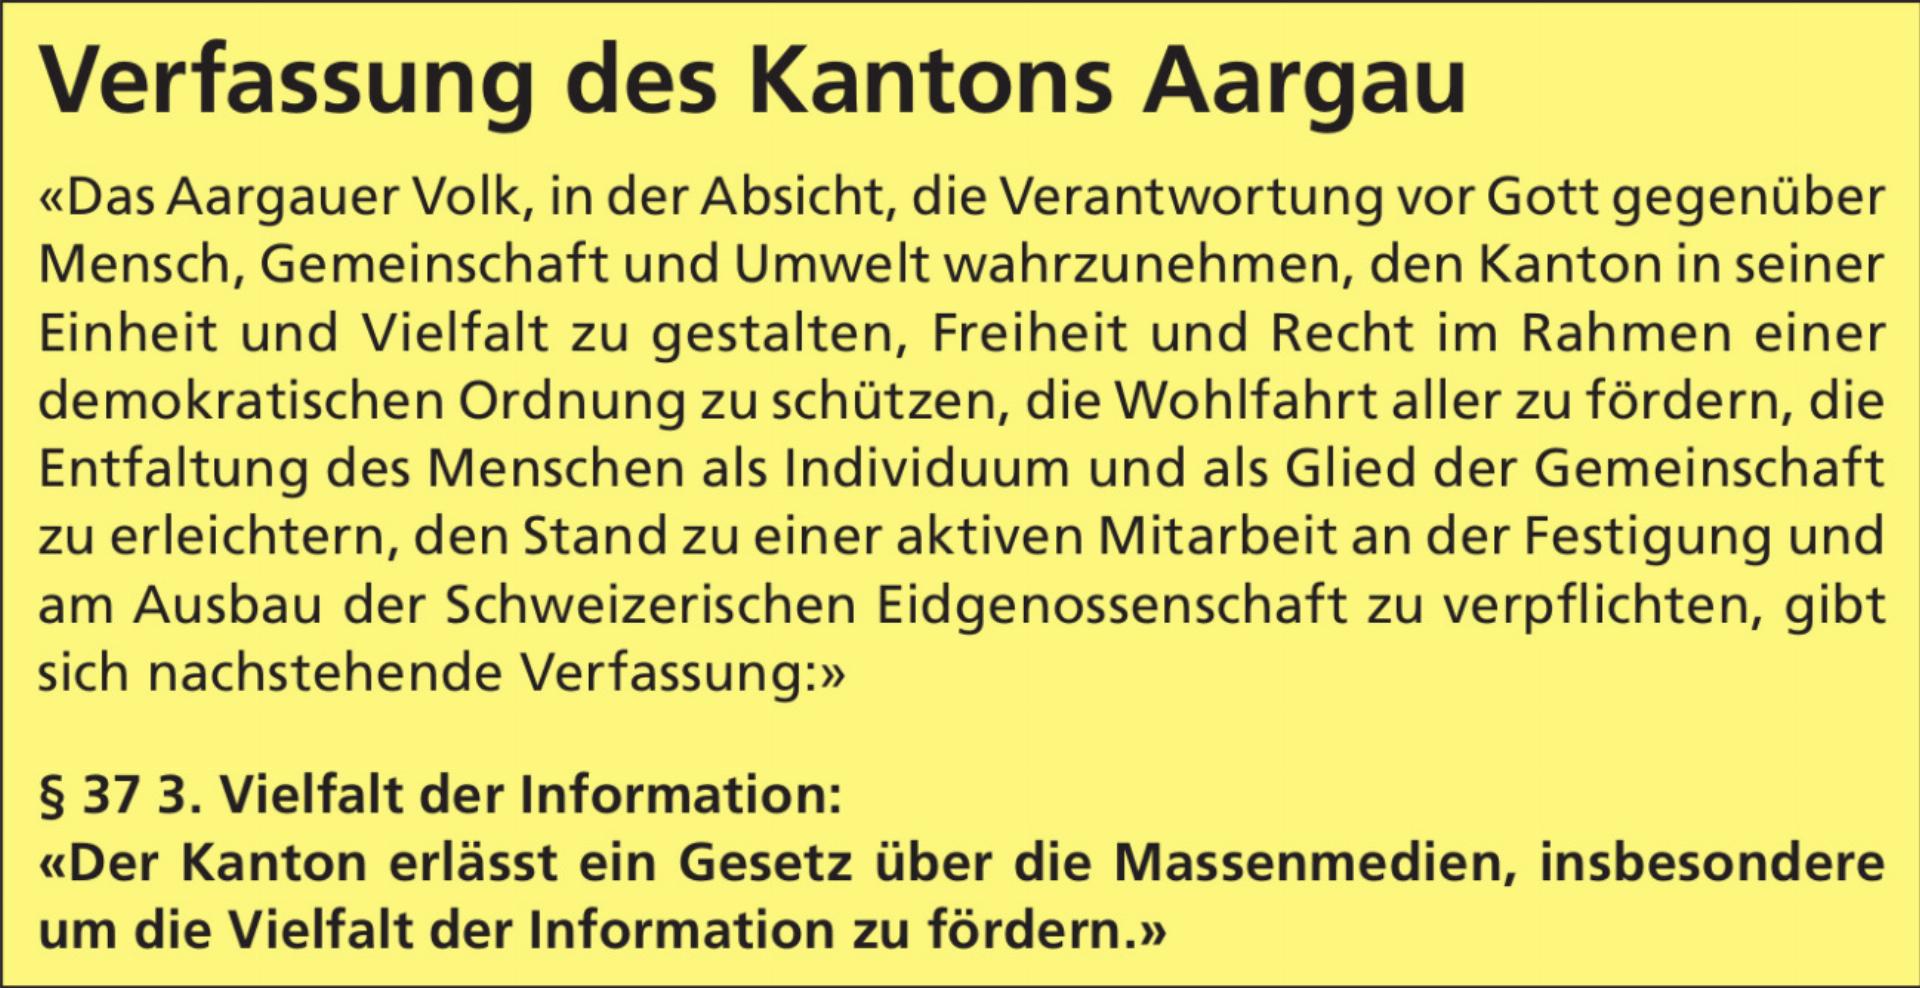 Die Verfassung des Kantons Aargau fordert ein Mediengesetz, der Regierungsrat will nicht und spielt auf Zeit. Quelle: Auszug aus der Kantonsverfassung